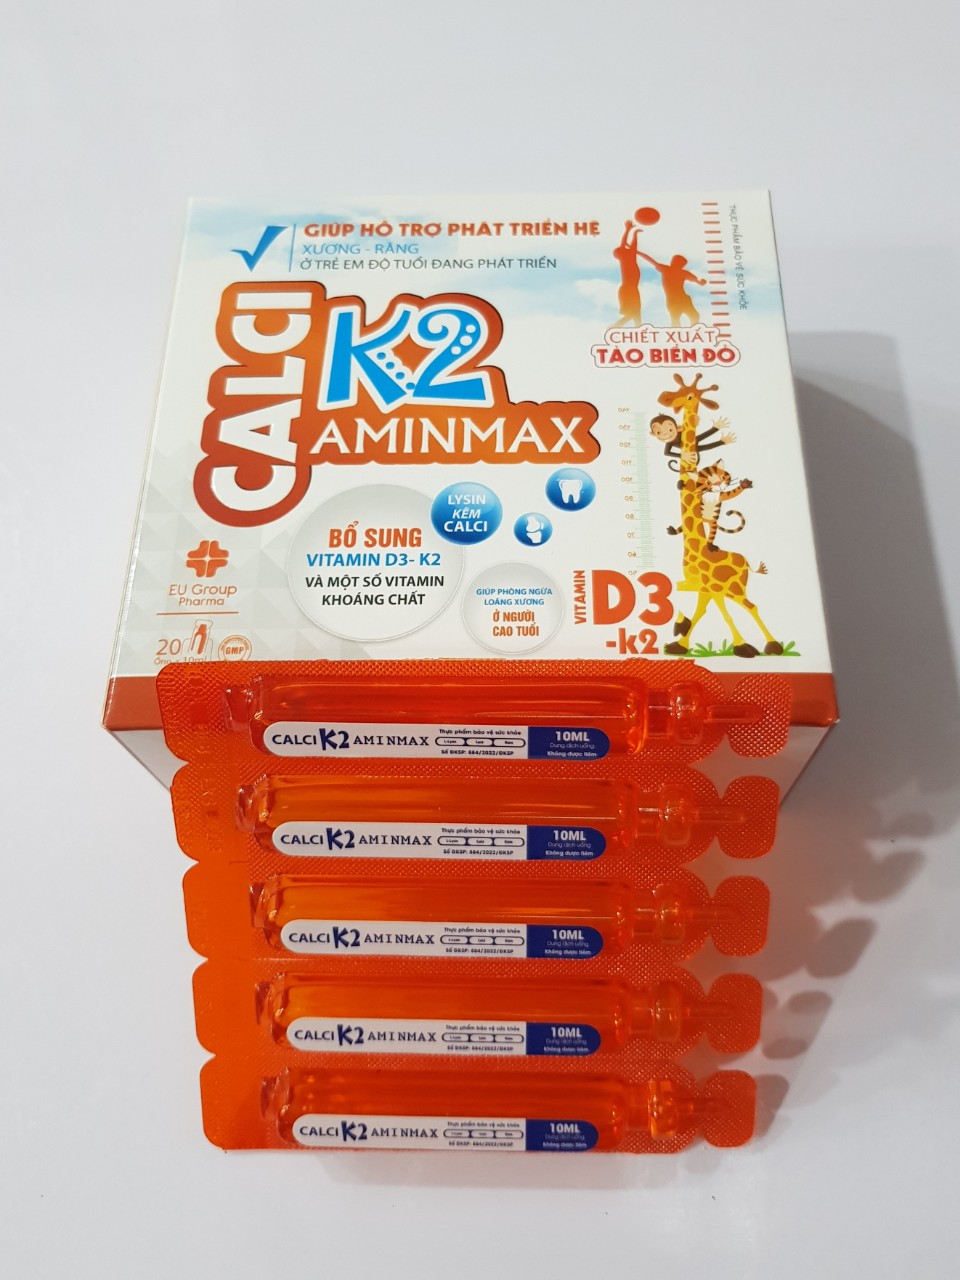 Calci K2 Aminmax: Bổ sung canxi, vitamin D3 - K2 và một số vitamin khoáng chất, phòng ngừa loãng xương ở người cao tuổi.